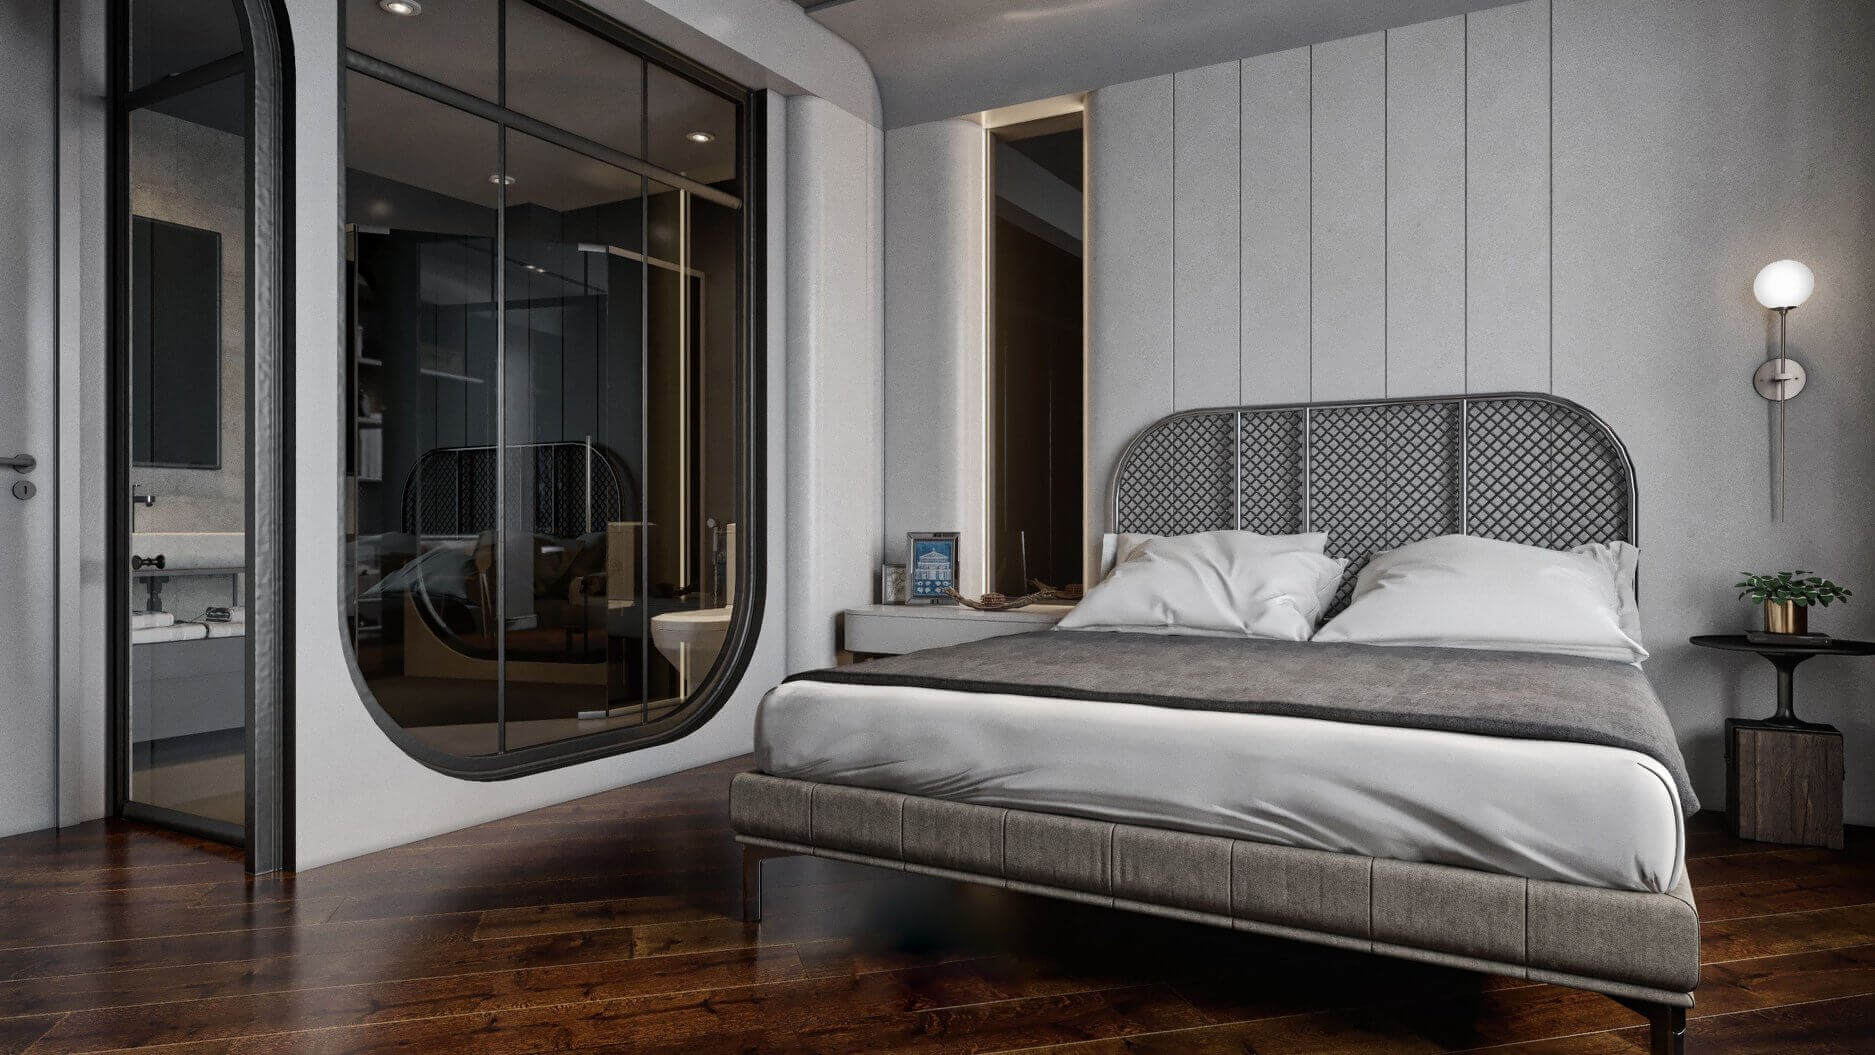 Hình ảnh: Thiết kế phòng ngủ khách sạn với gam màu tối